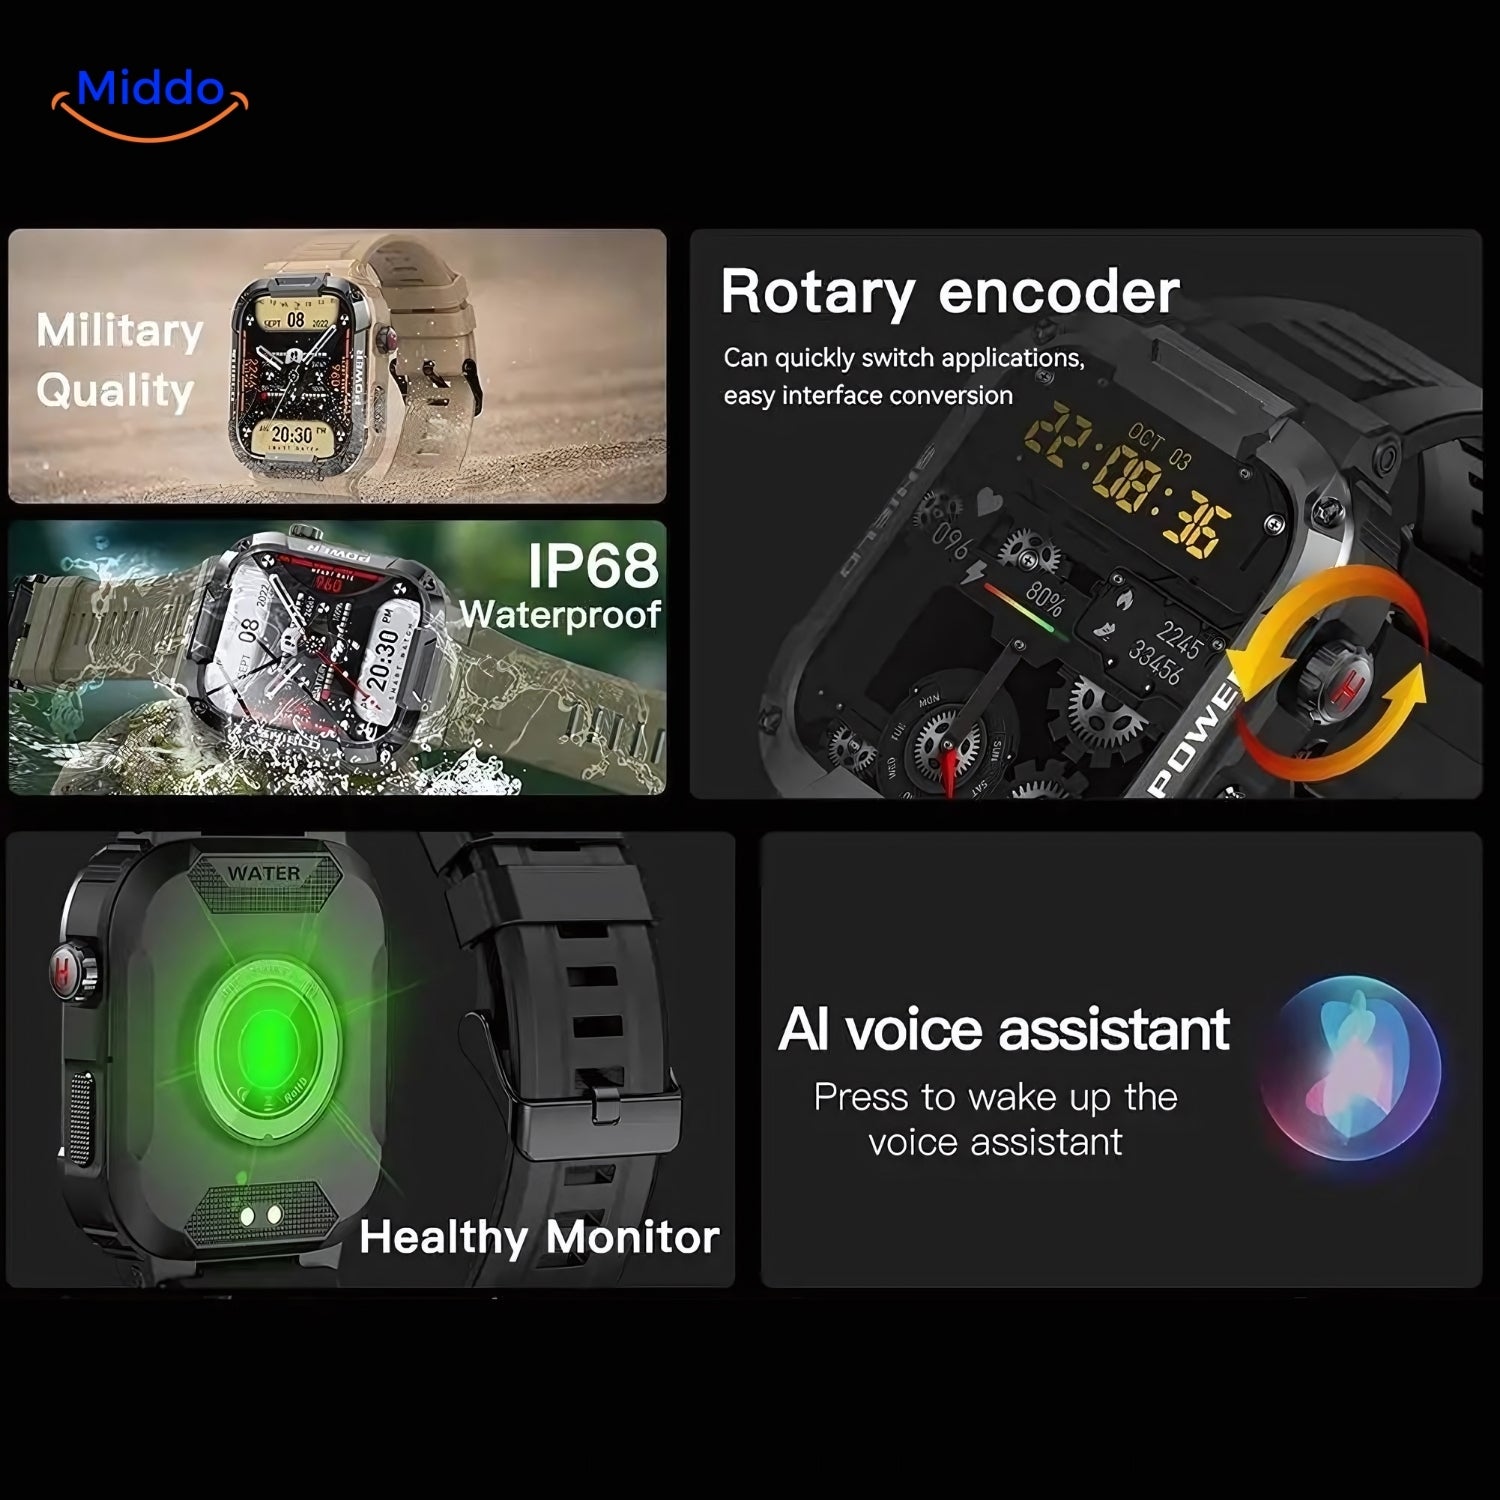 IP68 waterproof onverwoestbare smartwatch voor IOS en Android www.middo.nl